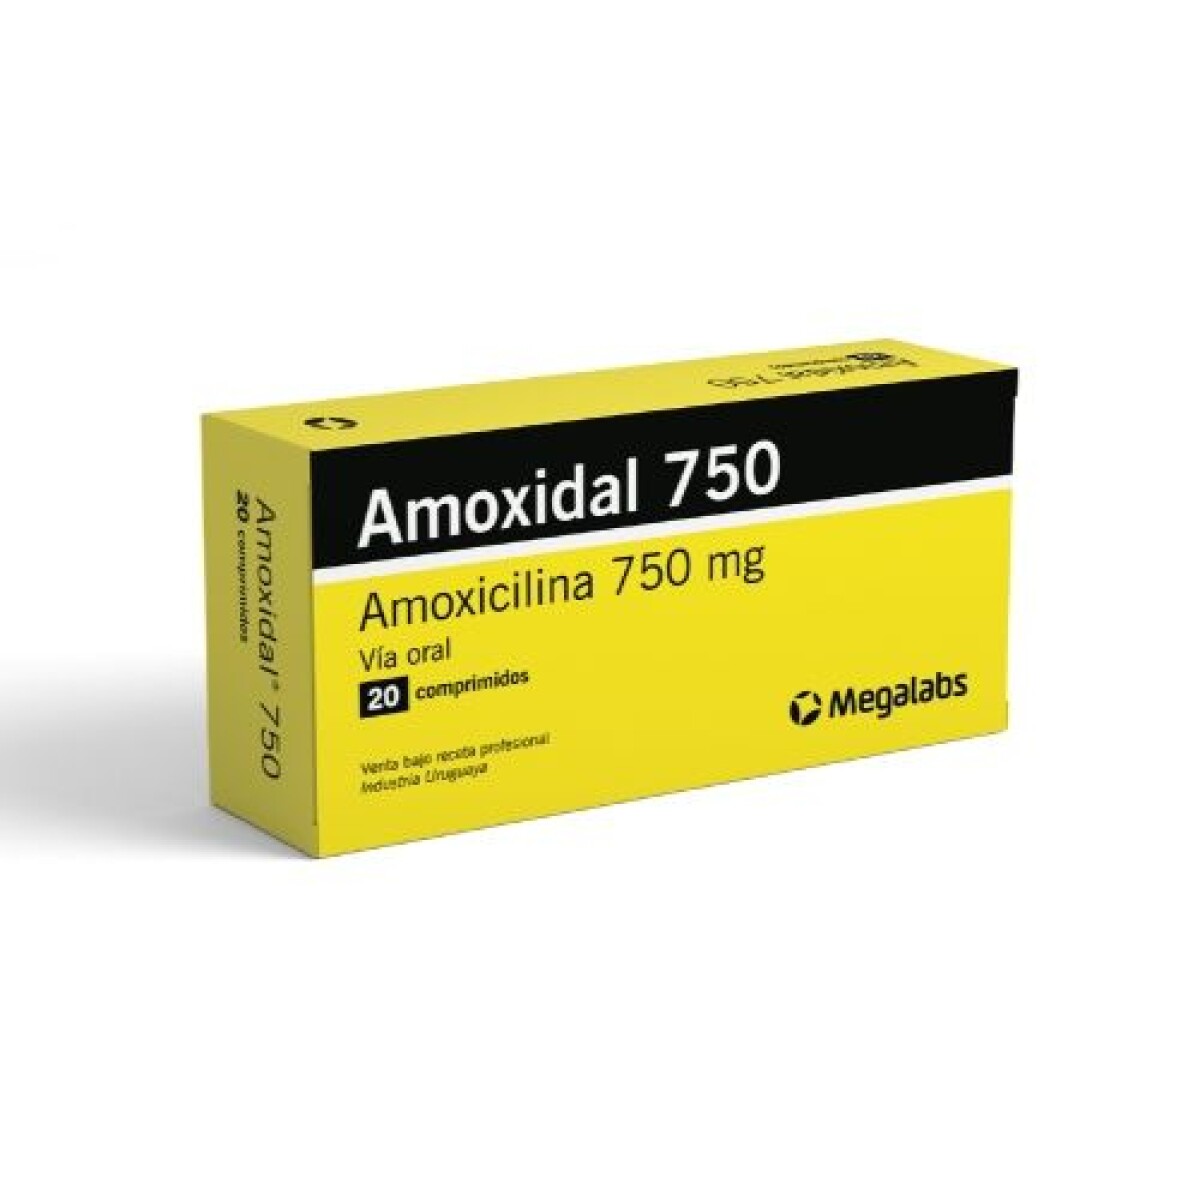 Amoxidal 750 20 Comprimidos 